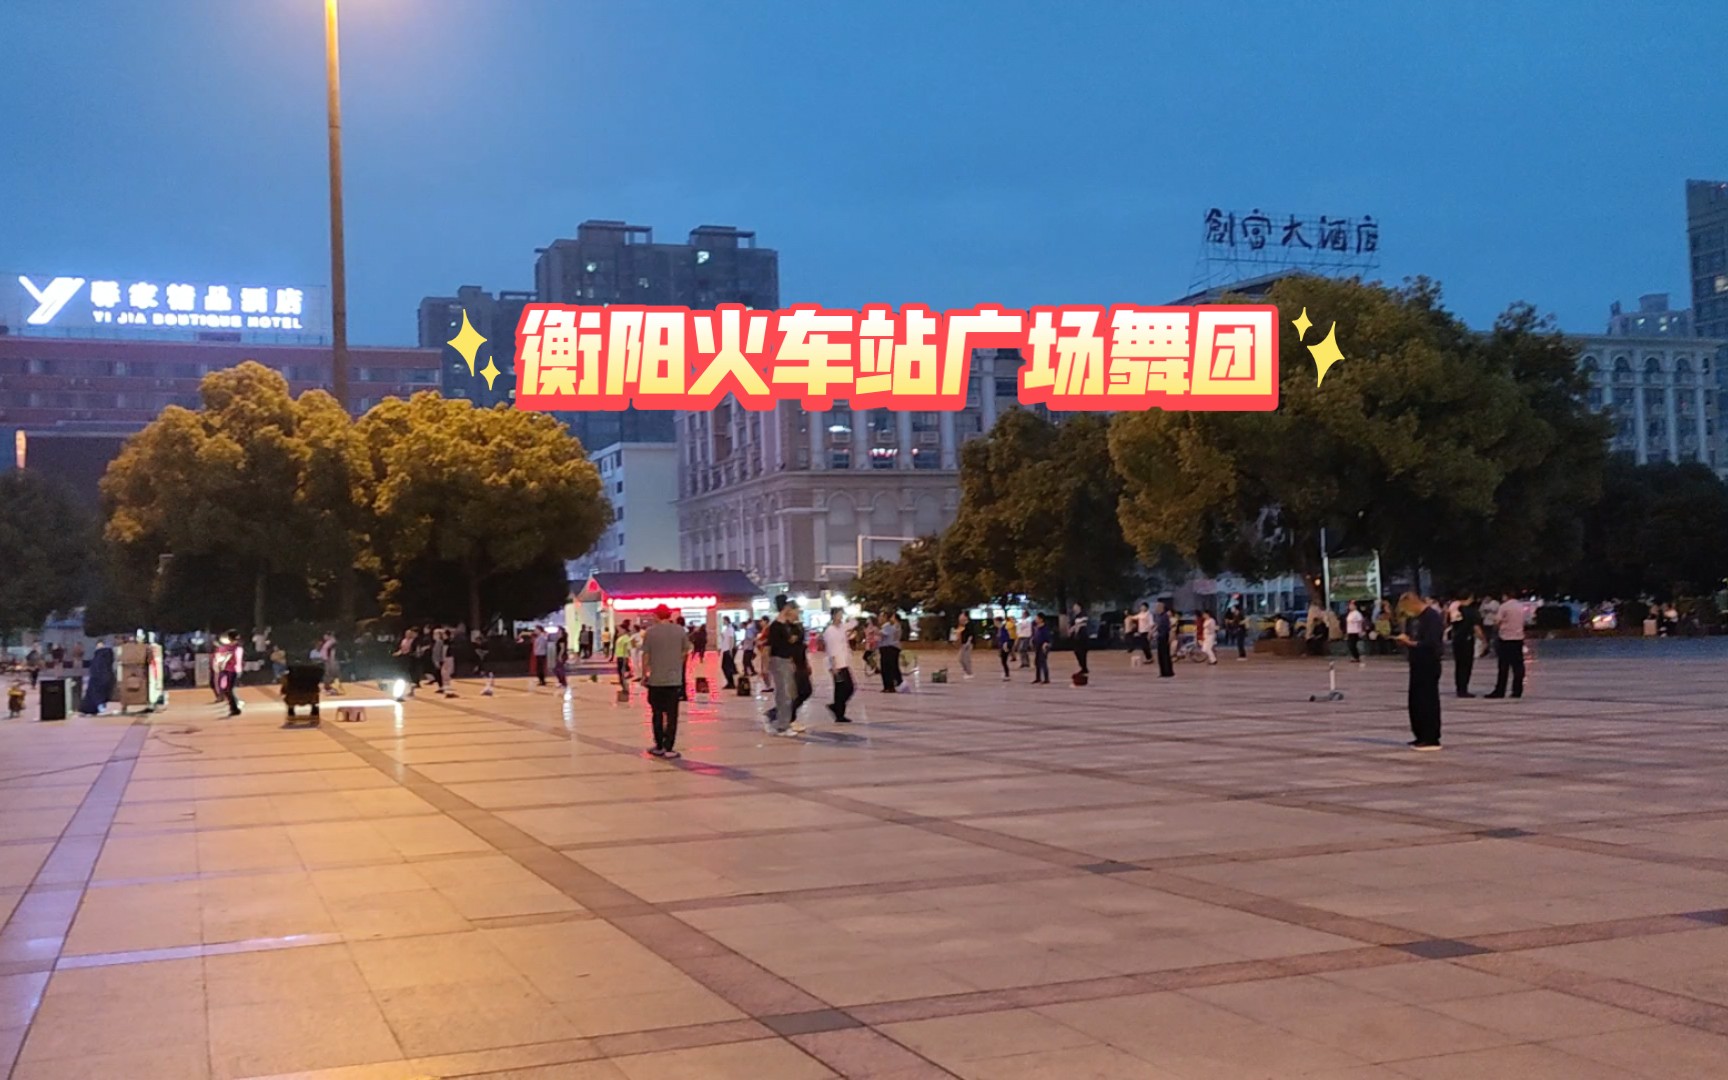 充满民国风情的火车小站——衡阳火车西站|李盛玄